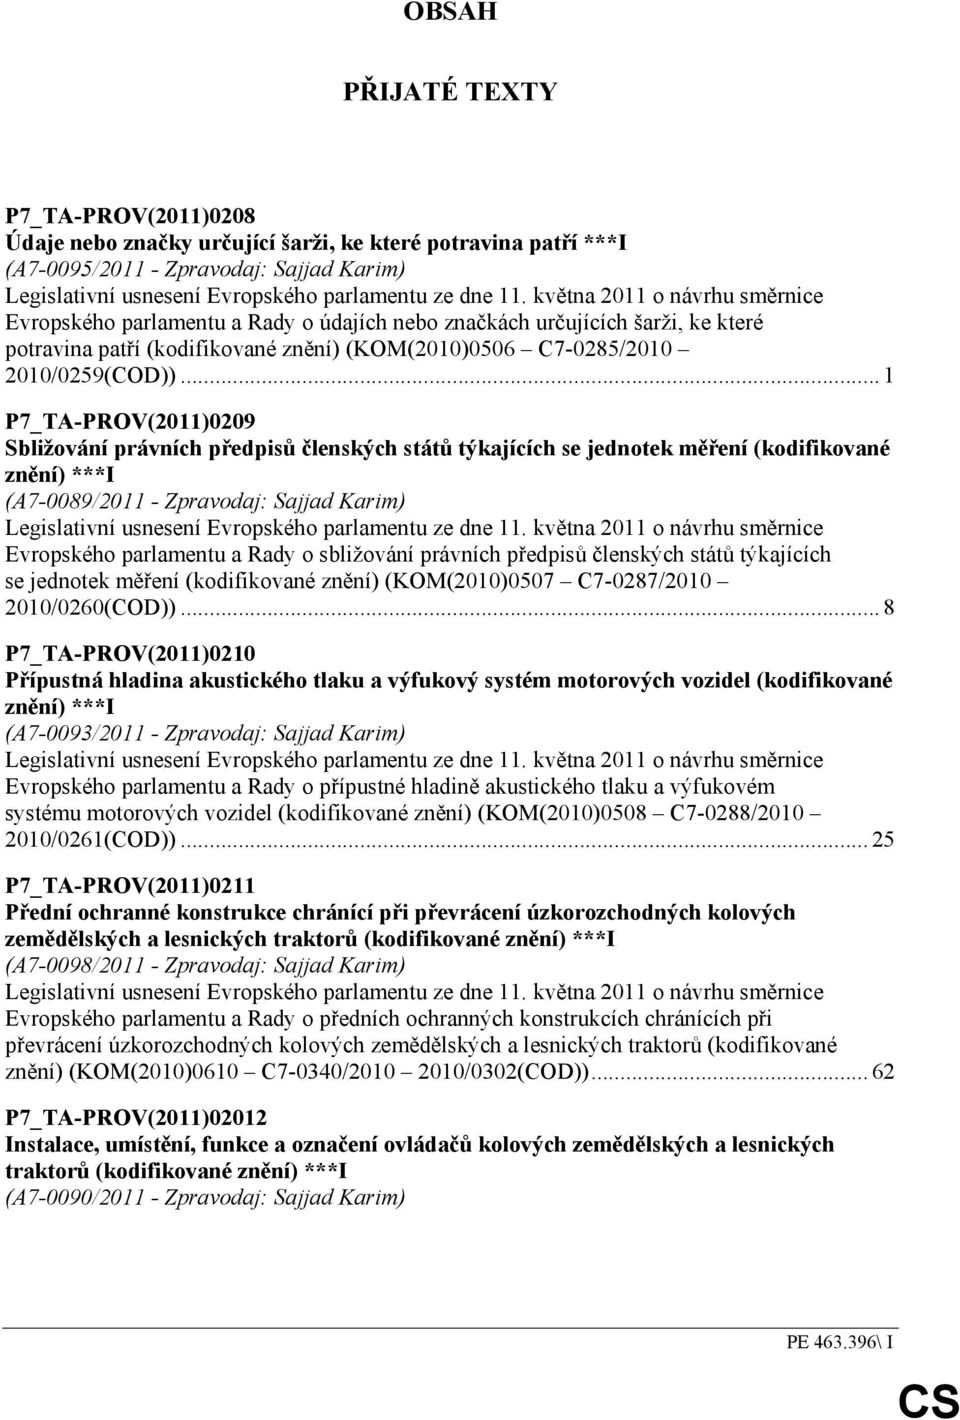 .. 1 P7_TA-PROV(2011)0209 Sbližování právních předpisů členských států týkajících se jednotek měření (kodifikované znění) ***I (A7-0089/2011 - Zpravodaj: Sajjad Karim) Legislativní usnesení